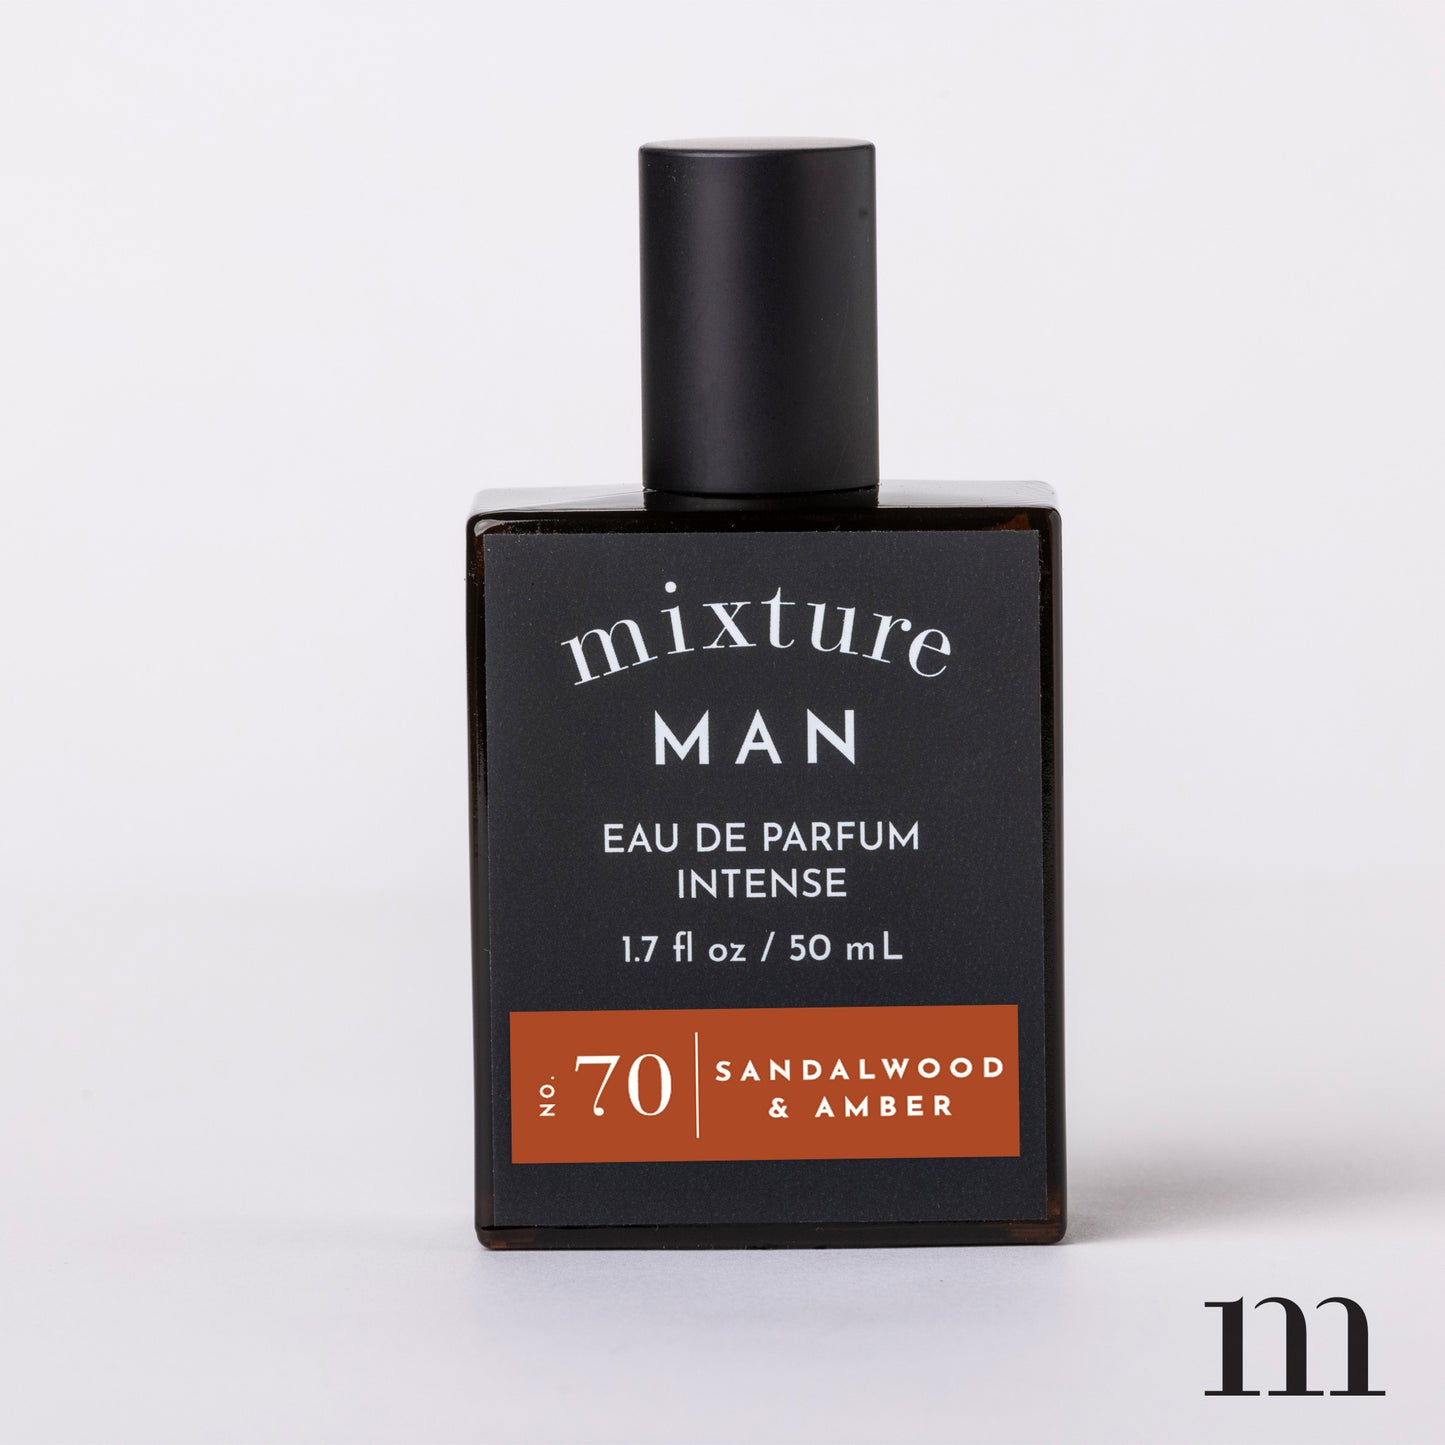 Mixture Man 1.7oz Eau de Parfum Intense